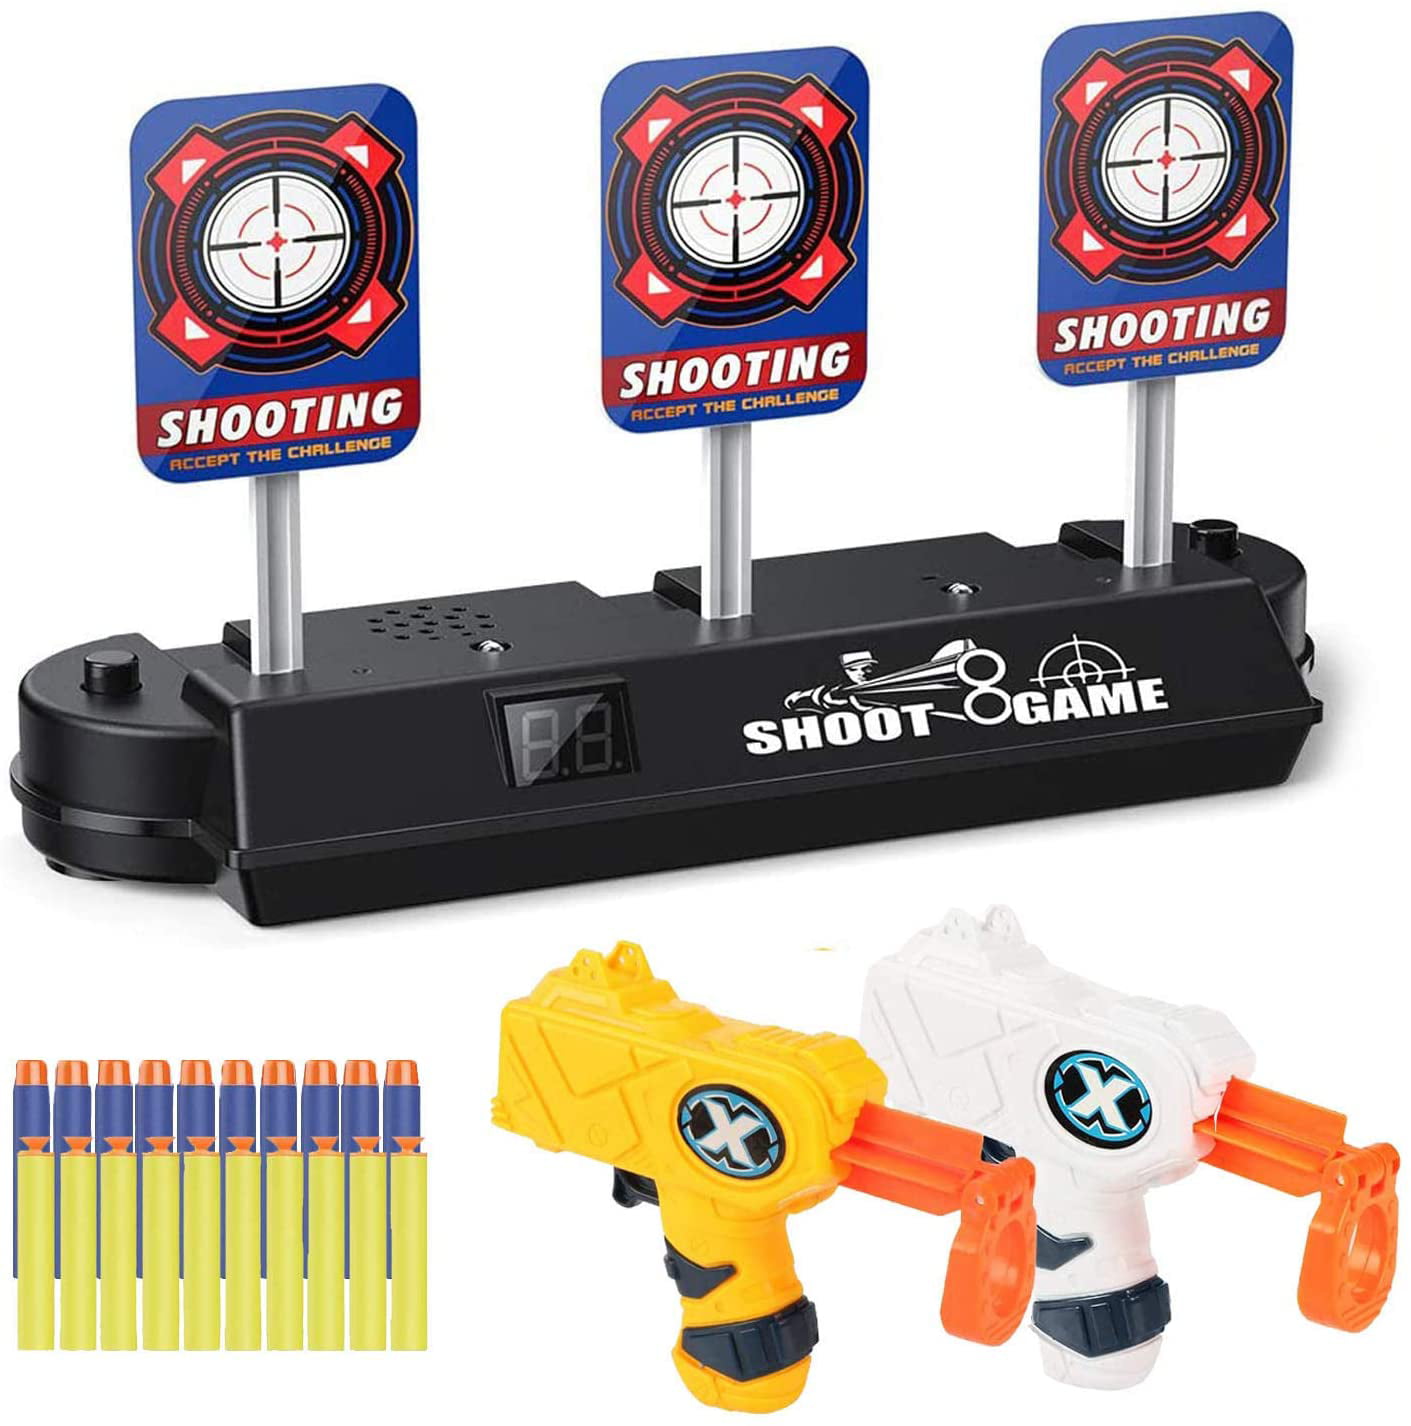 Electric Scoring Reset Digital Shooting Target For Nerf Blaster Toy Gun Set Game 